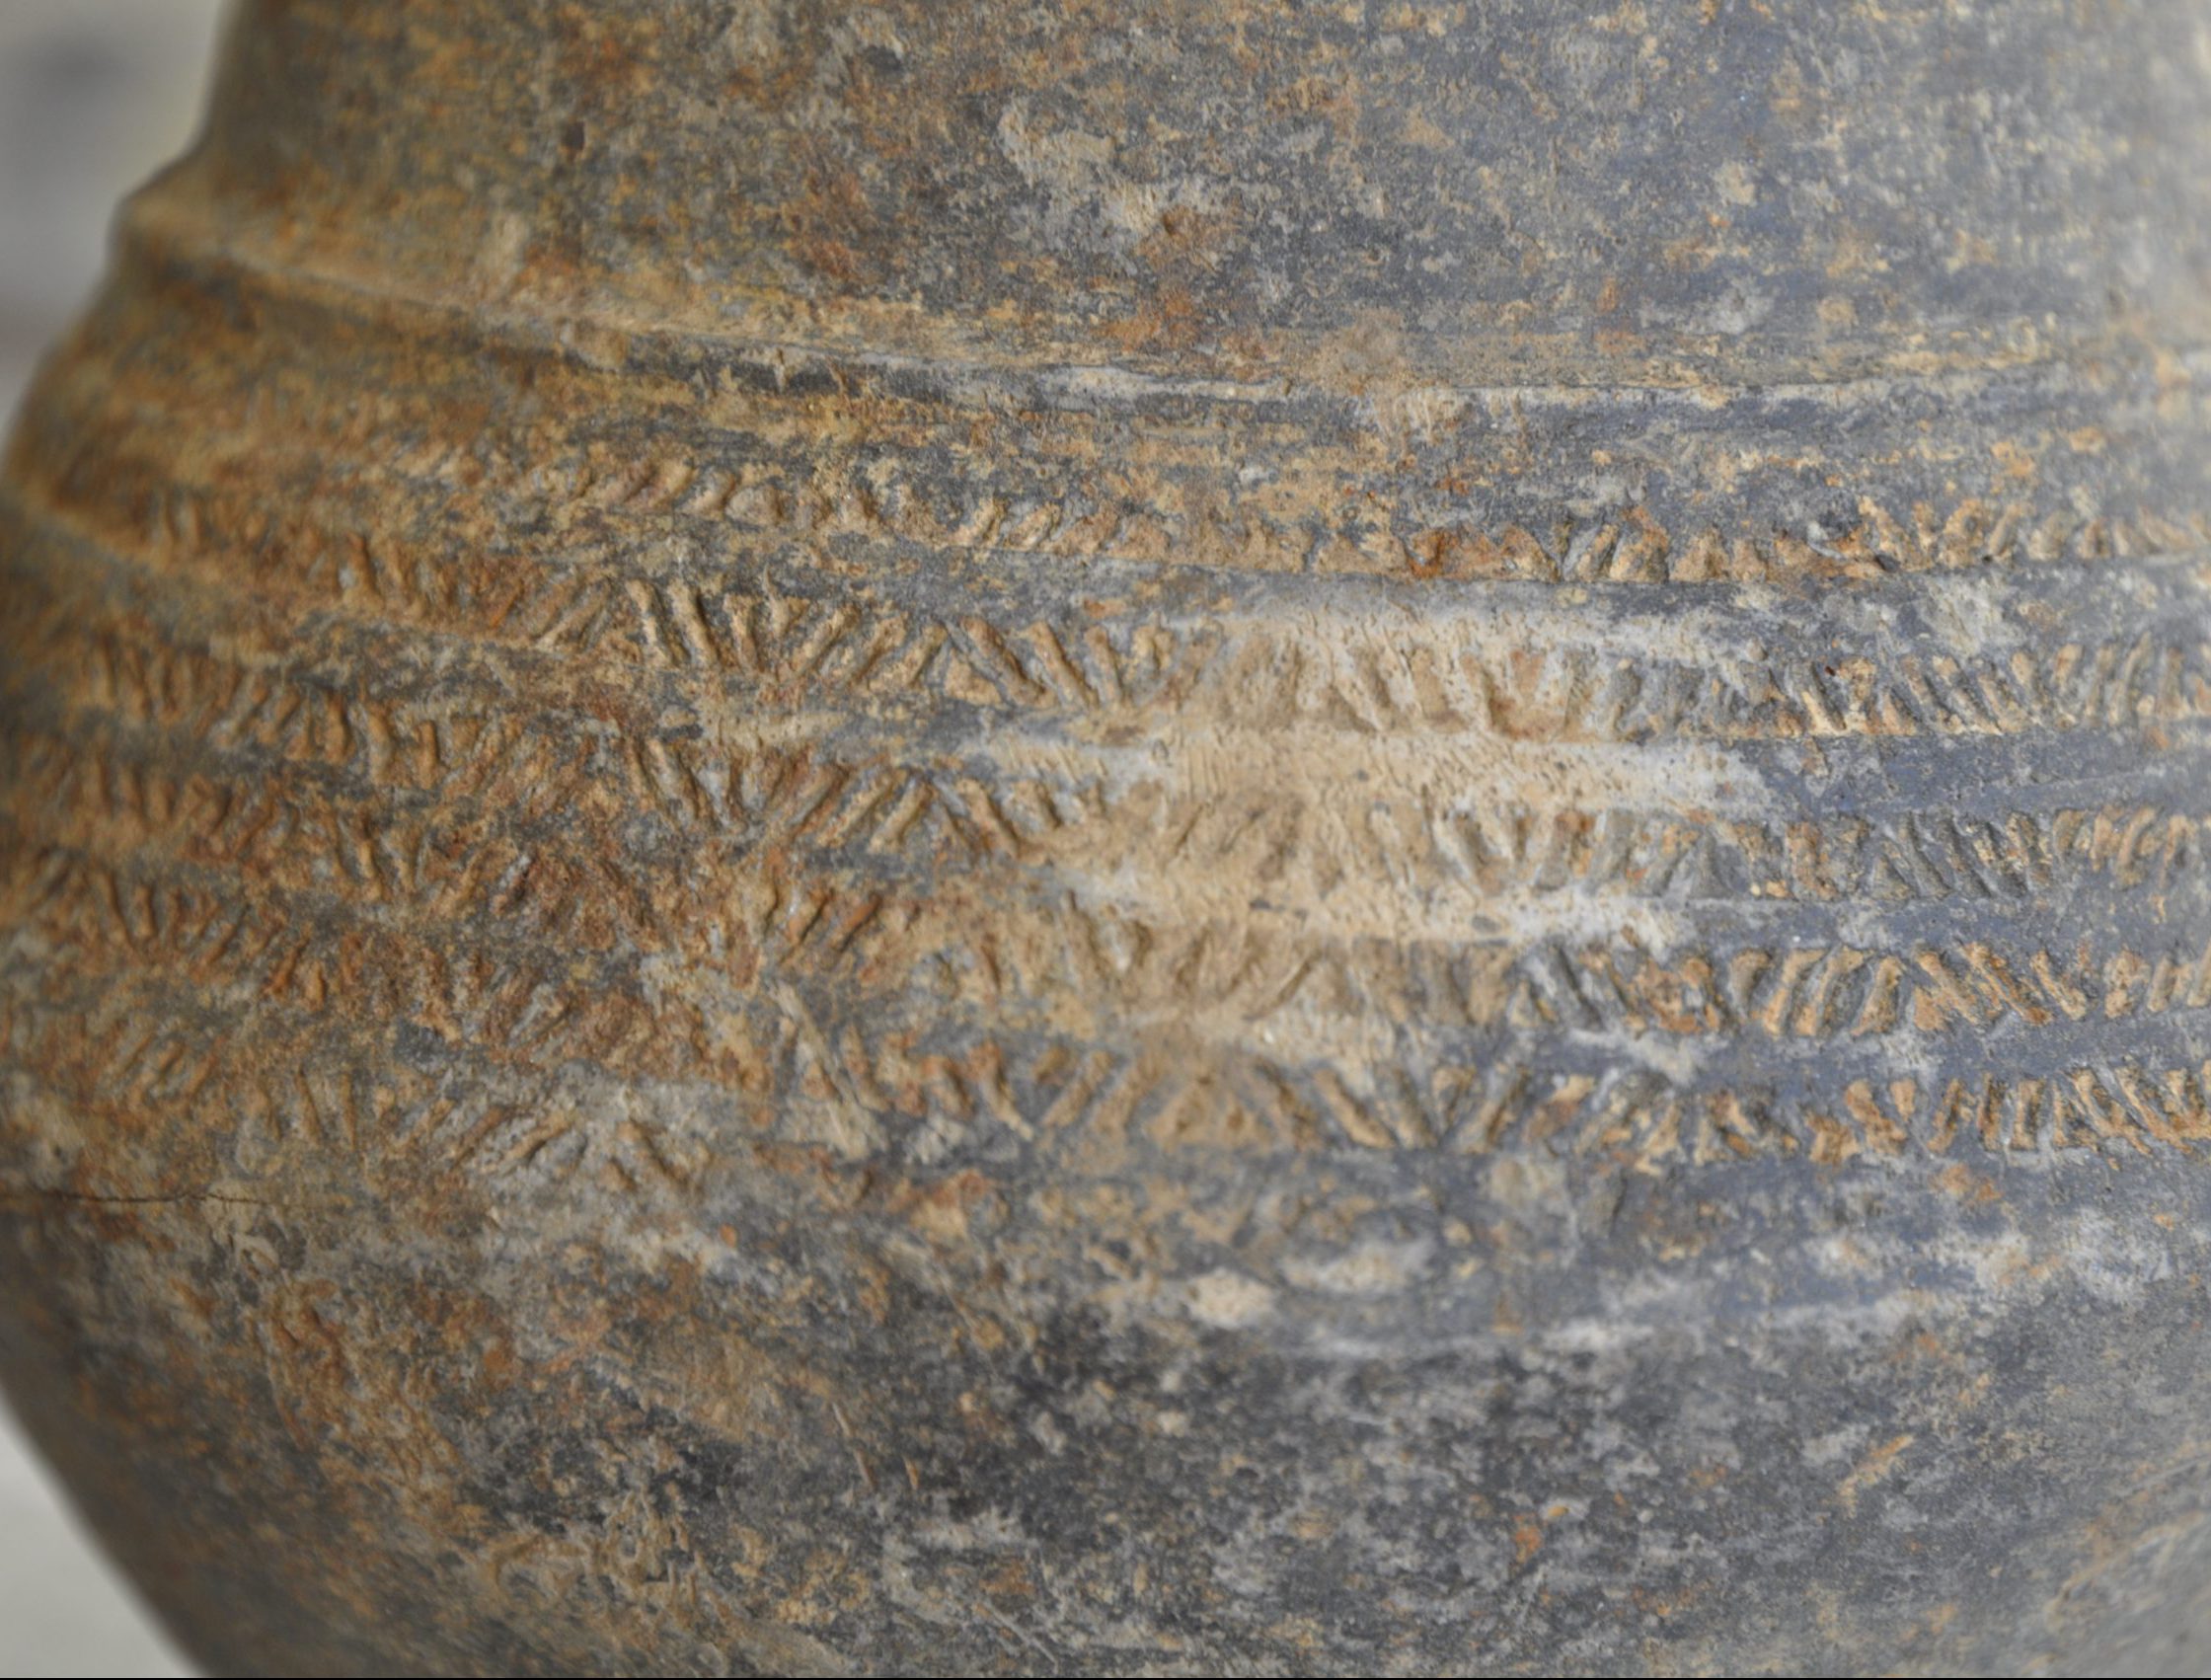 Base bicônique mérovingien terre cuite avant traitement vase archéologique issu de fouille restauration argile Bruxelles Sophie Genin